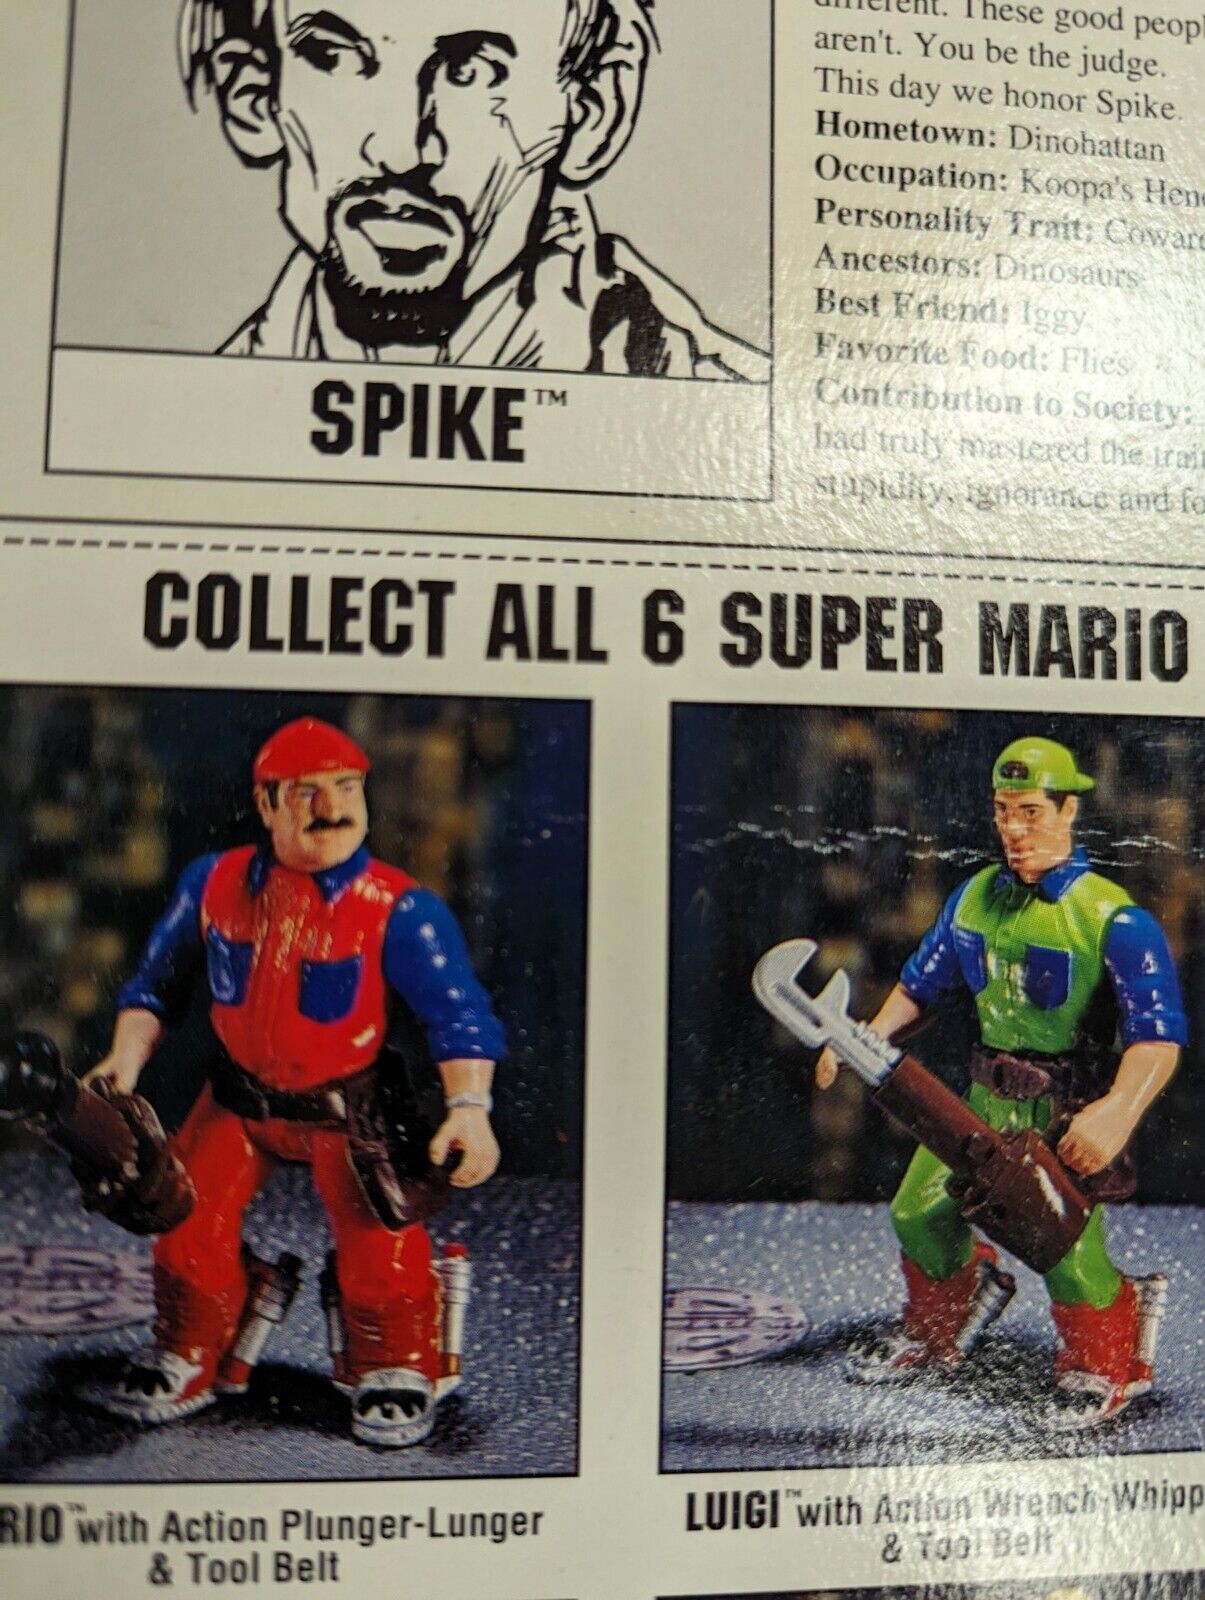 ERTL Super Mario Bros. Movie Spike With Devo Gun Action Figure